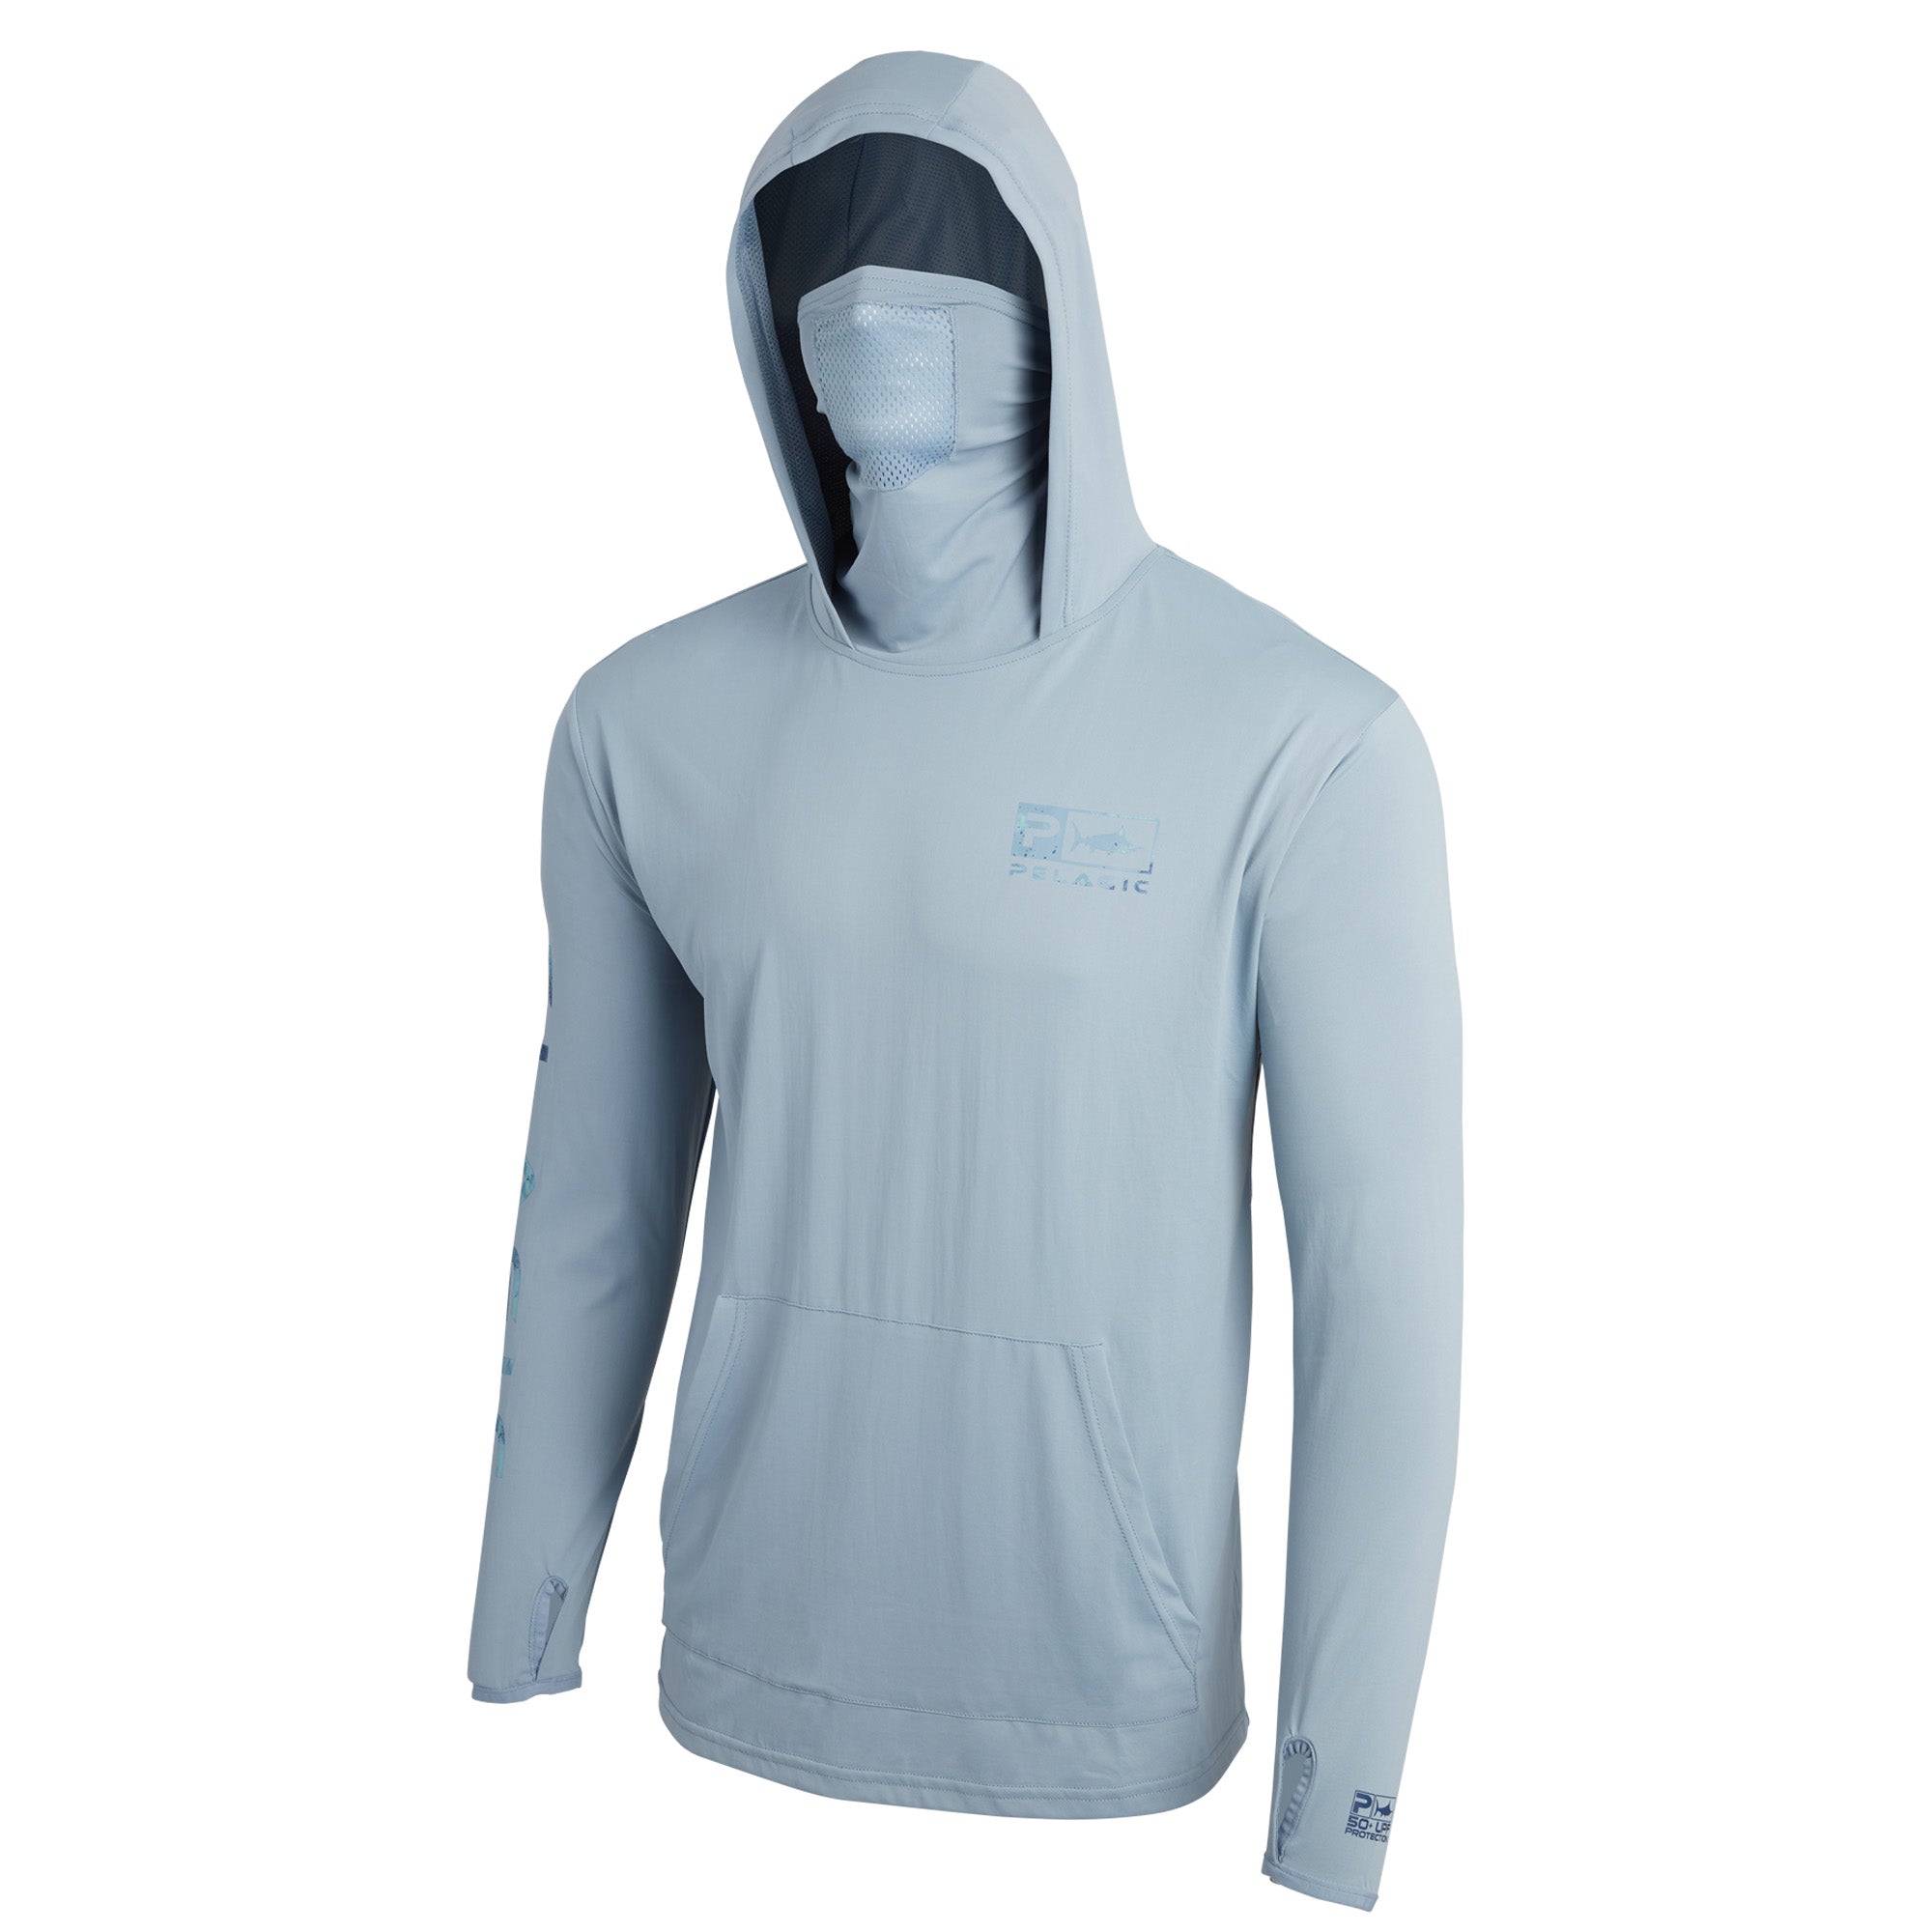 Pelagic Defcon Icon Hooded Fishing Shirt Light Grey / M